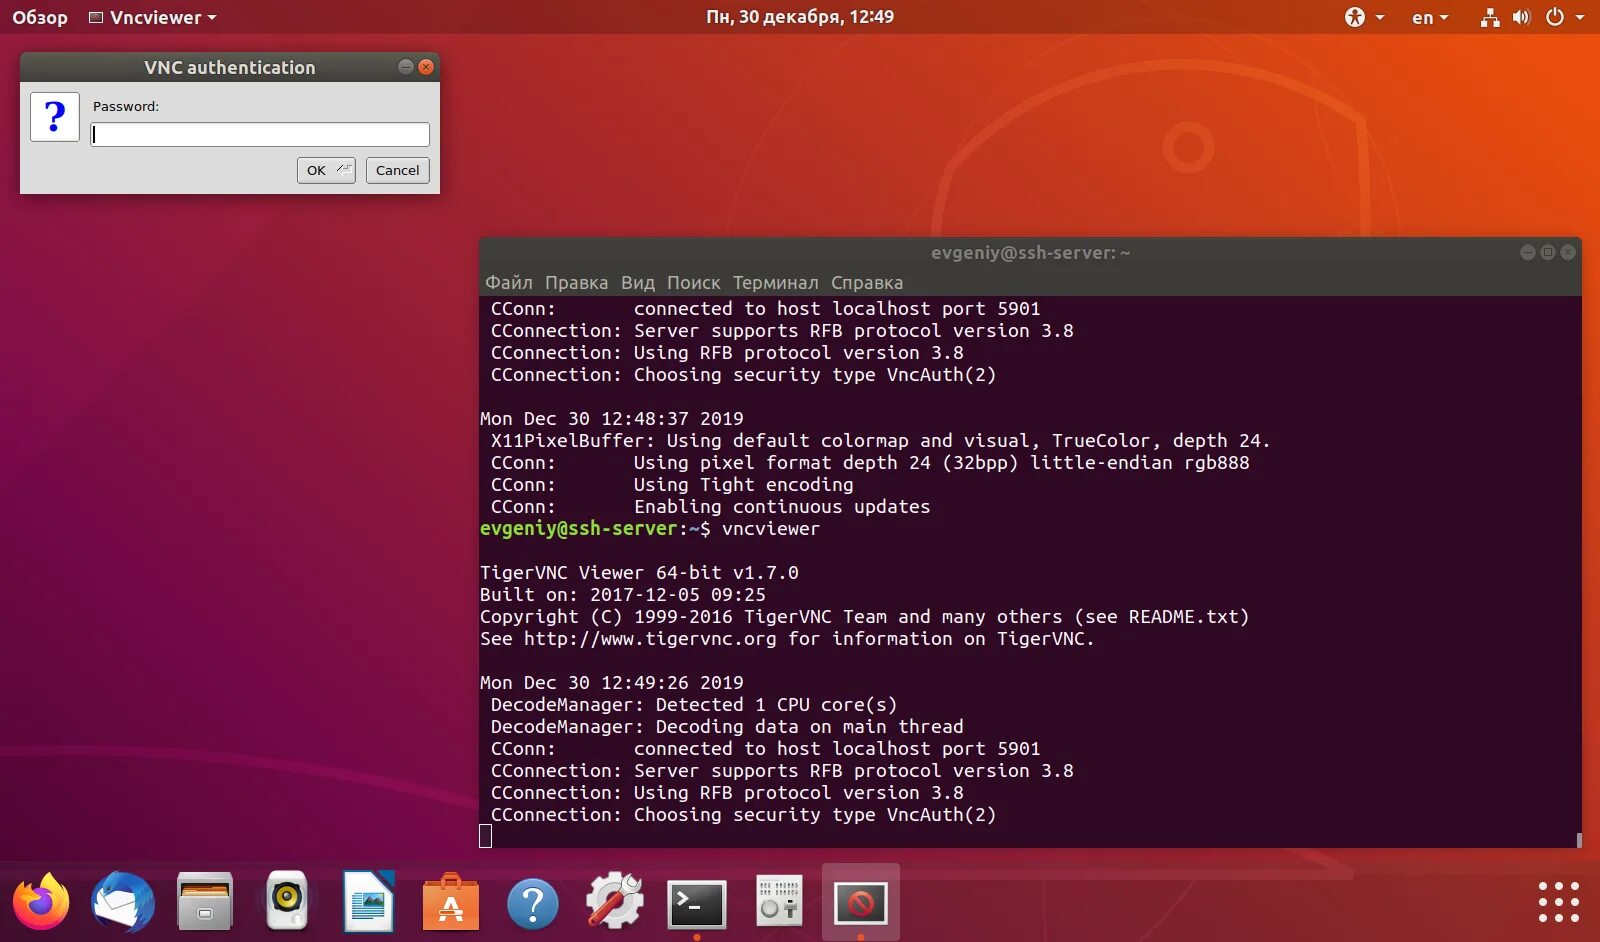 ОС Ubuntu 18. Операционная система Ubuntu Server. Убунту сервер 18.04. Сервер на базе Ubuntu.